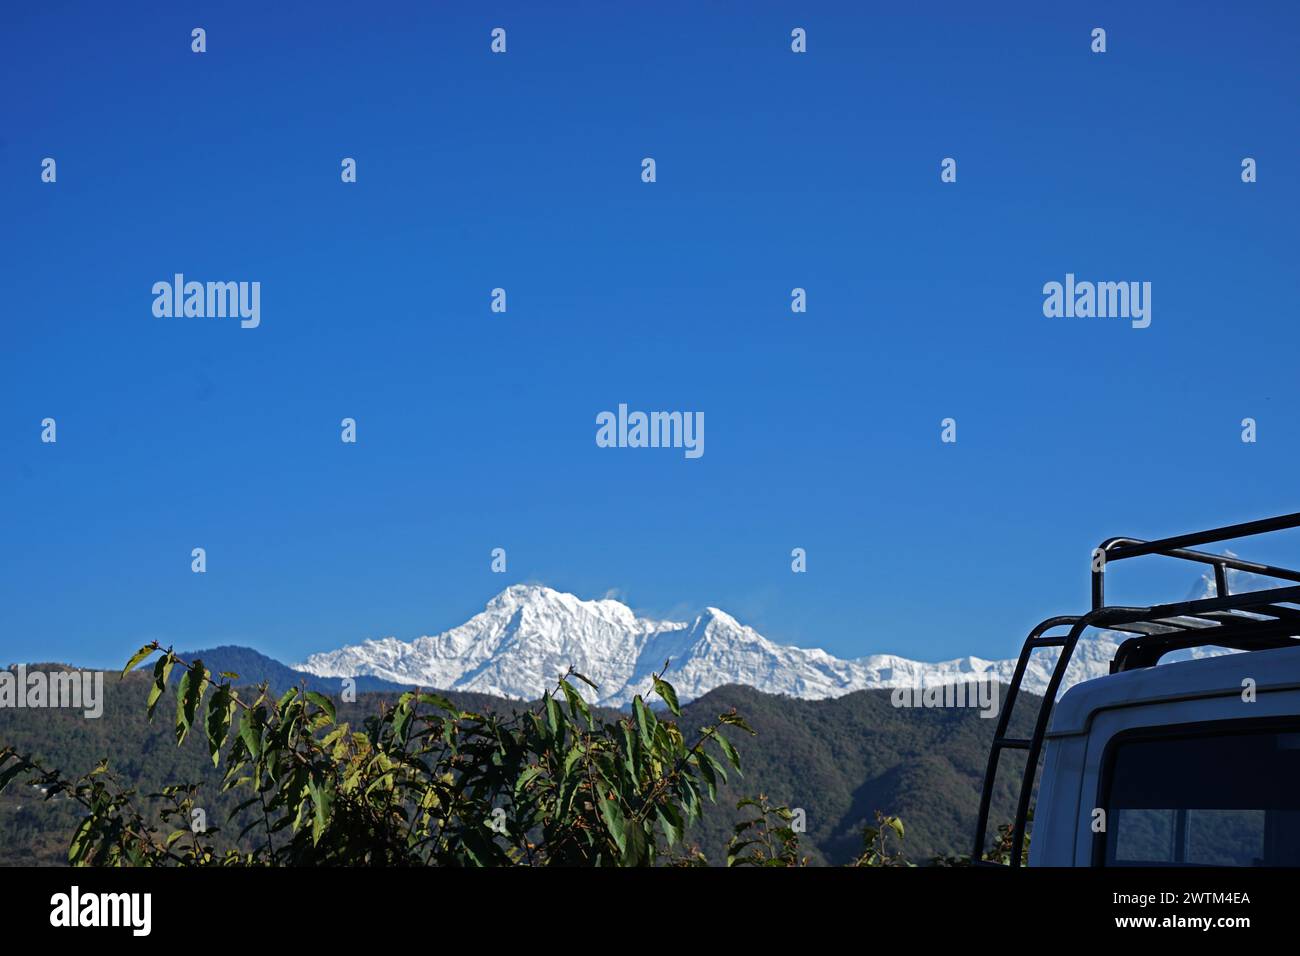 Blick auf die natürliche Landschaft des Machhapuchhre schneebedeckten Bergrücken und Annapurna im Himalaya-Gebirge vom vorderen Autoschild Pokhara, Nepal Stockfoto